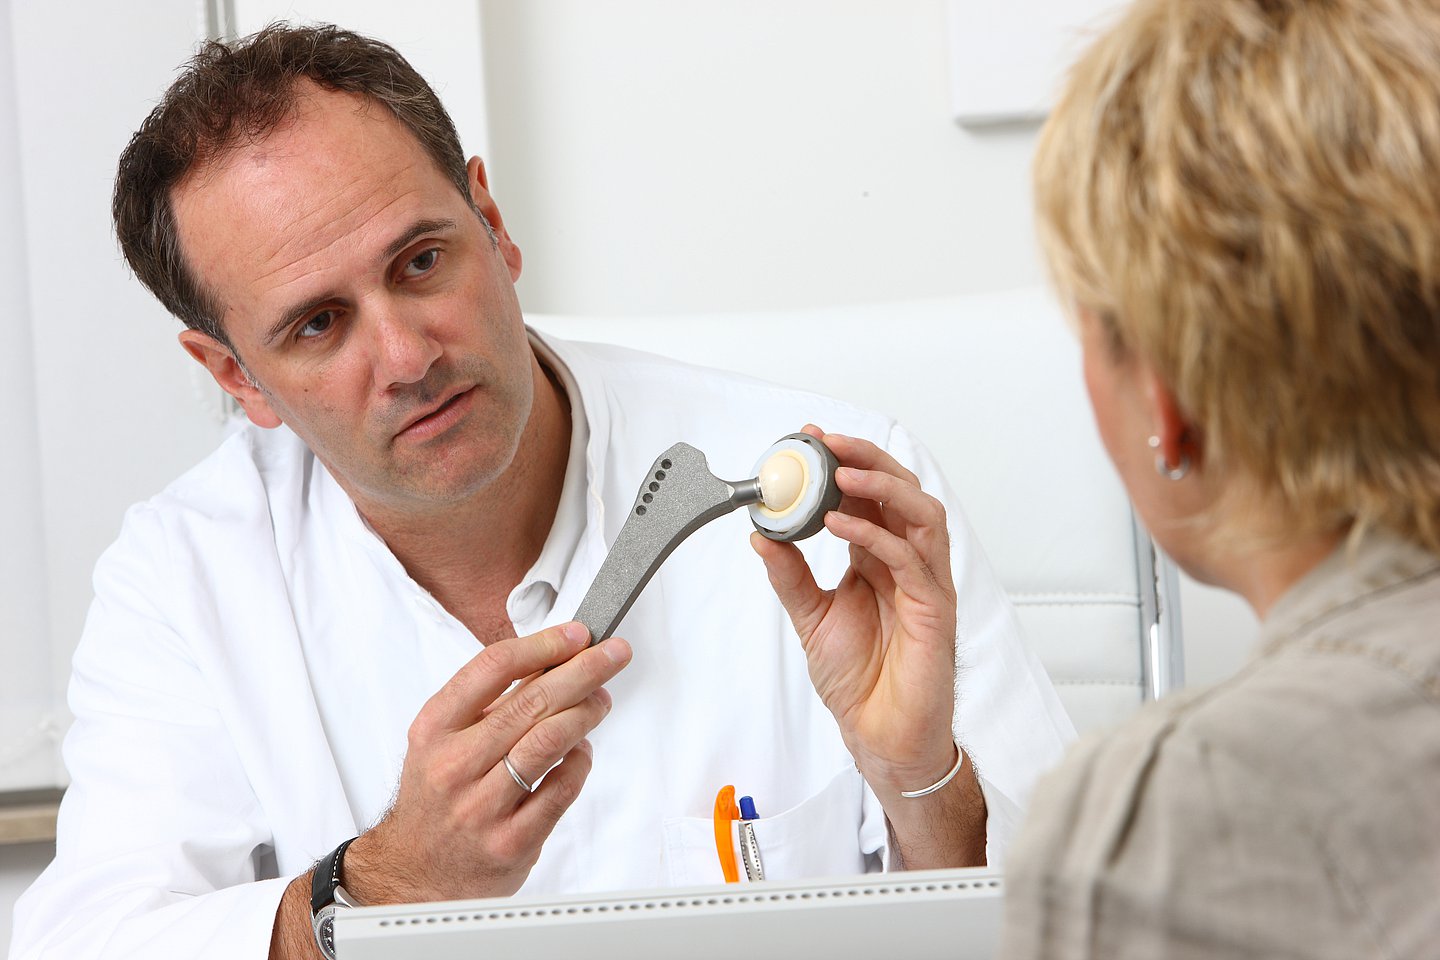 Foto: Ein Arzt erklärt einer Patientin die Funktion eines künstlichen Hüftgelenks (TEP).